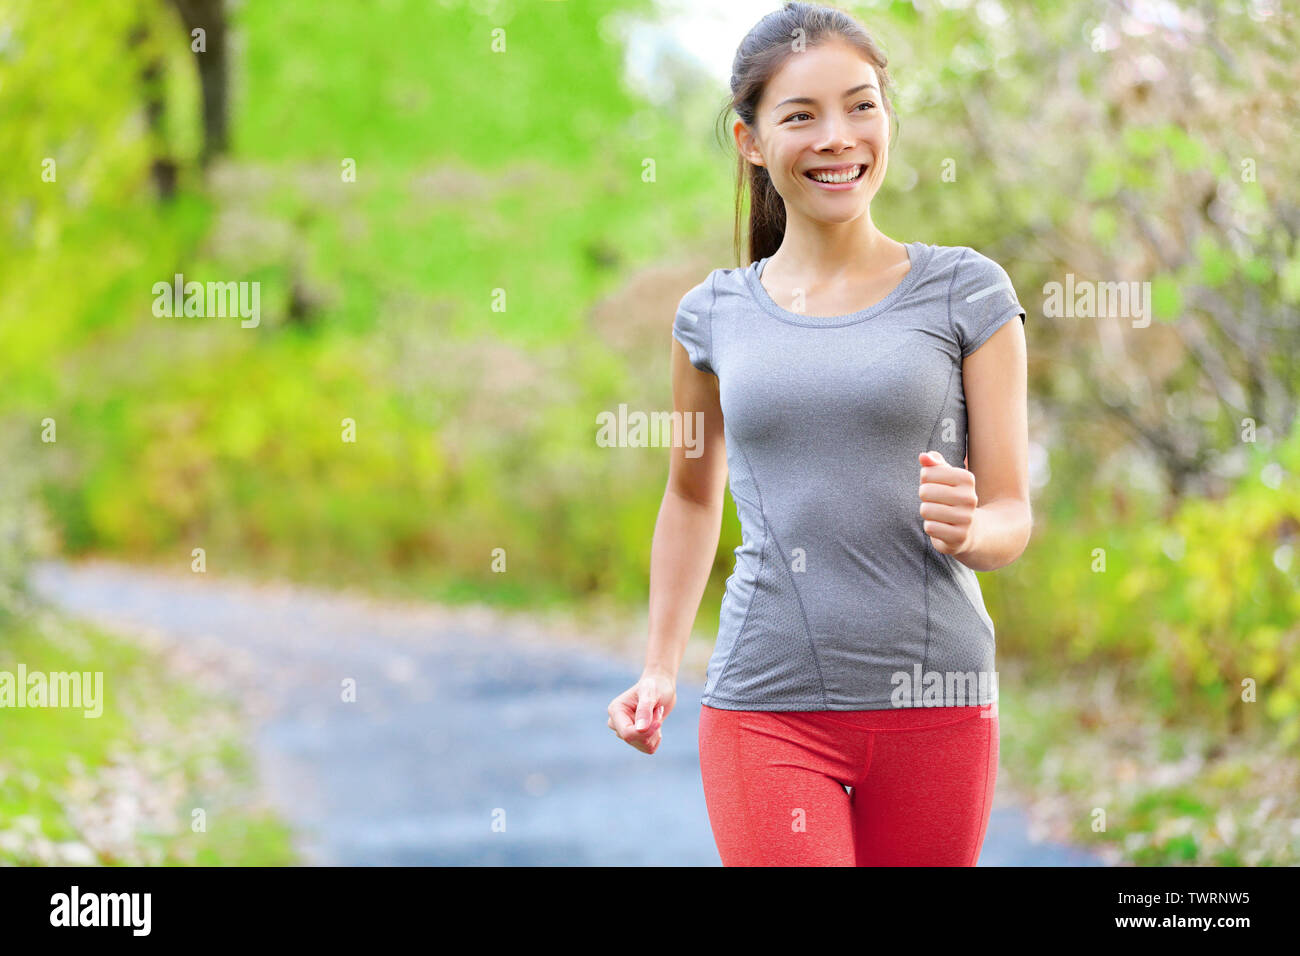 Frau Nordic-walking, joggen und leicht im Wald im Frühling oder Sommer. Sport Fitness Mädchen sport training und Arbeiten leben gesunden, aktiven Lebensstil in den Wald. Stockfoto